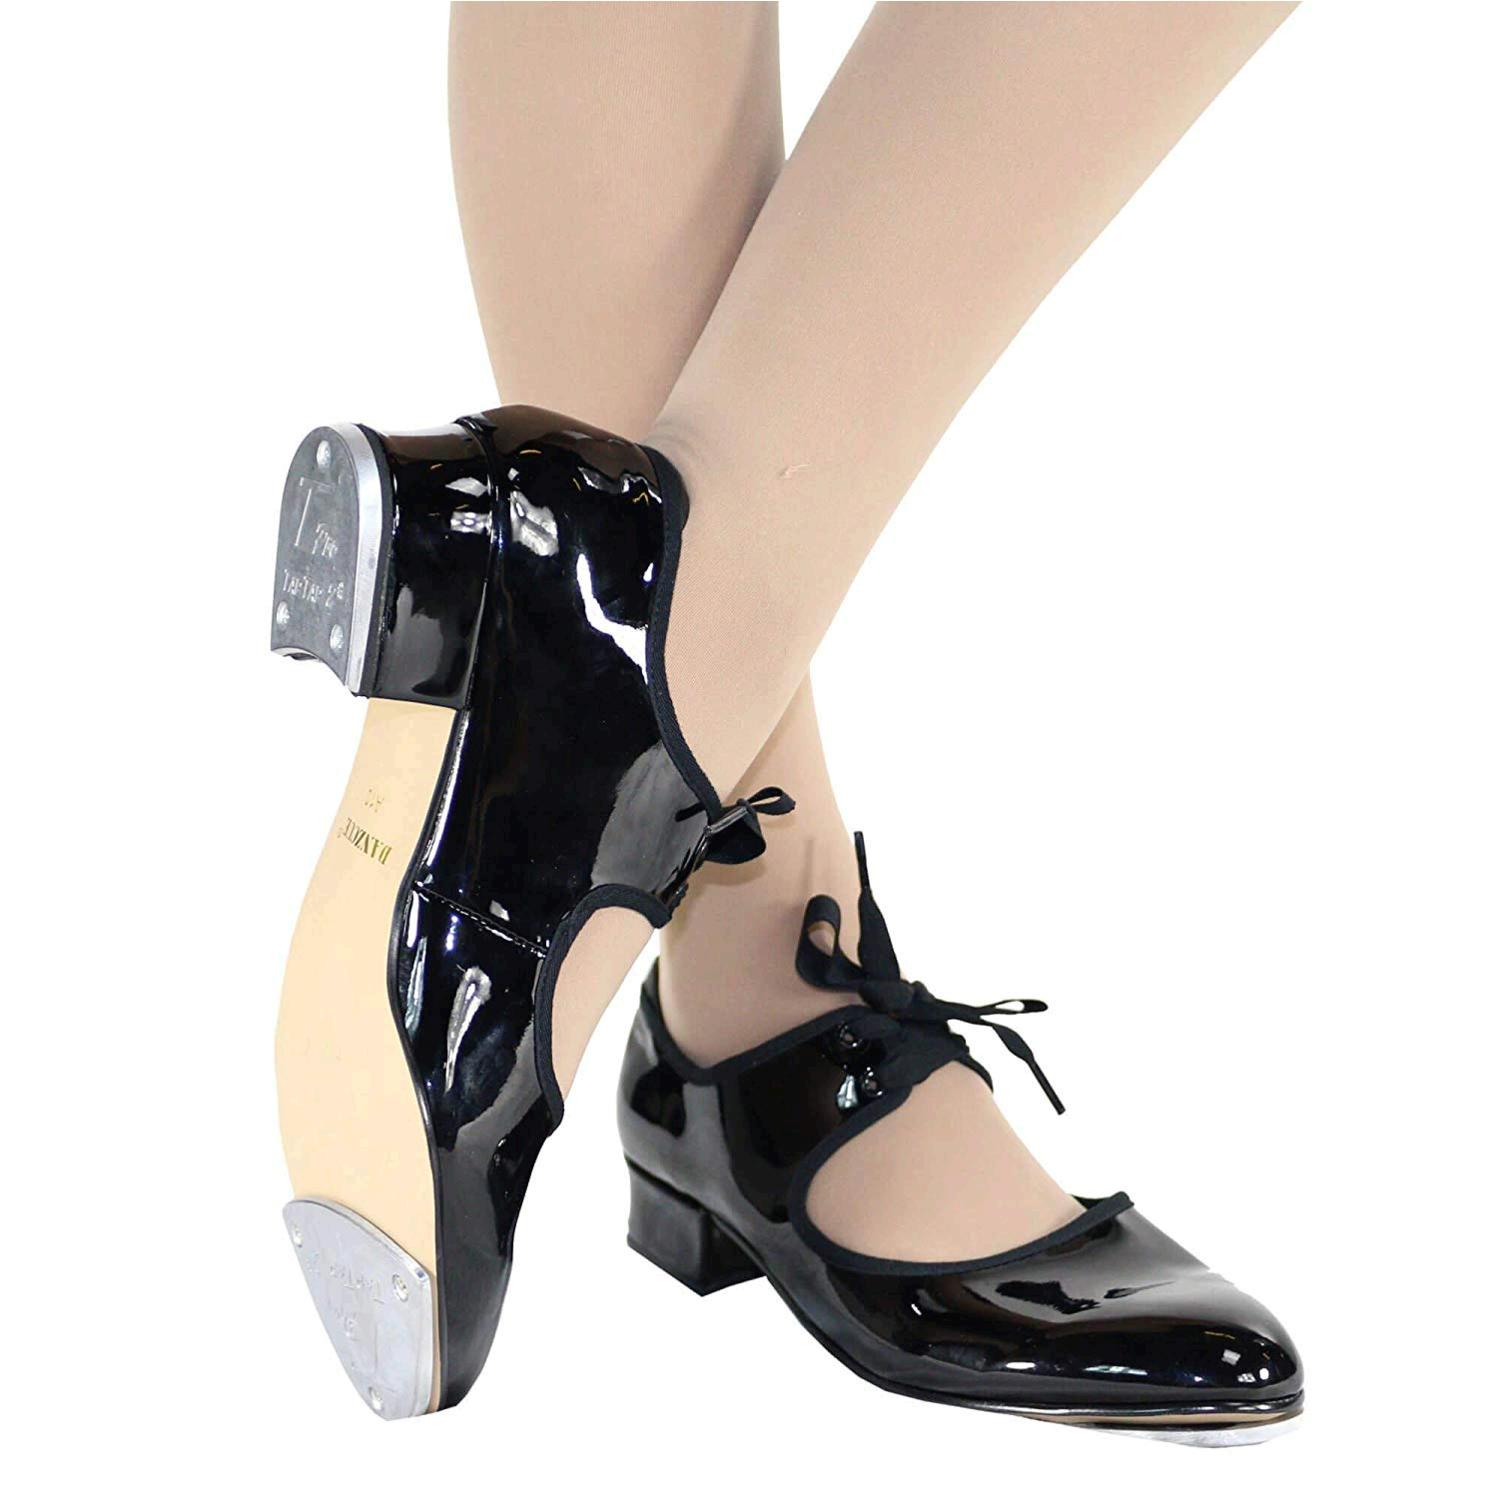 Danzcue Adult Patent Flexibale Tap Shoes, Black, Size 4.0 H619